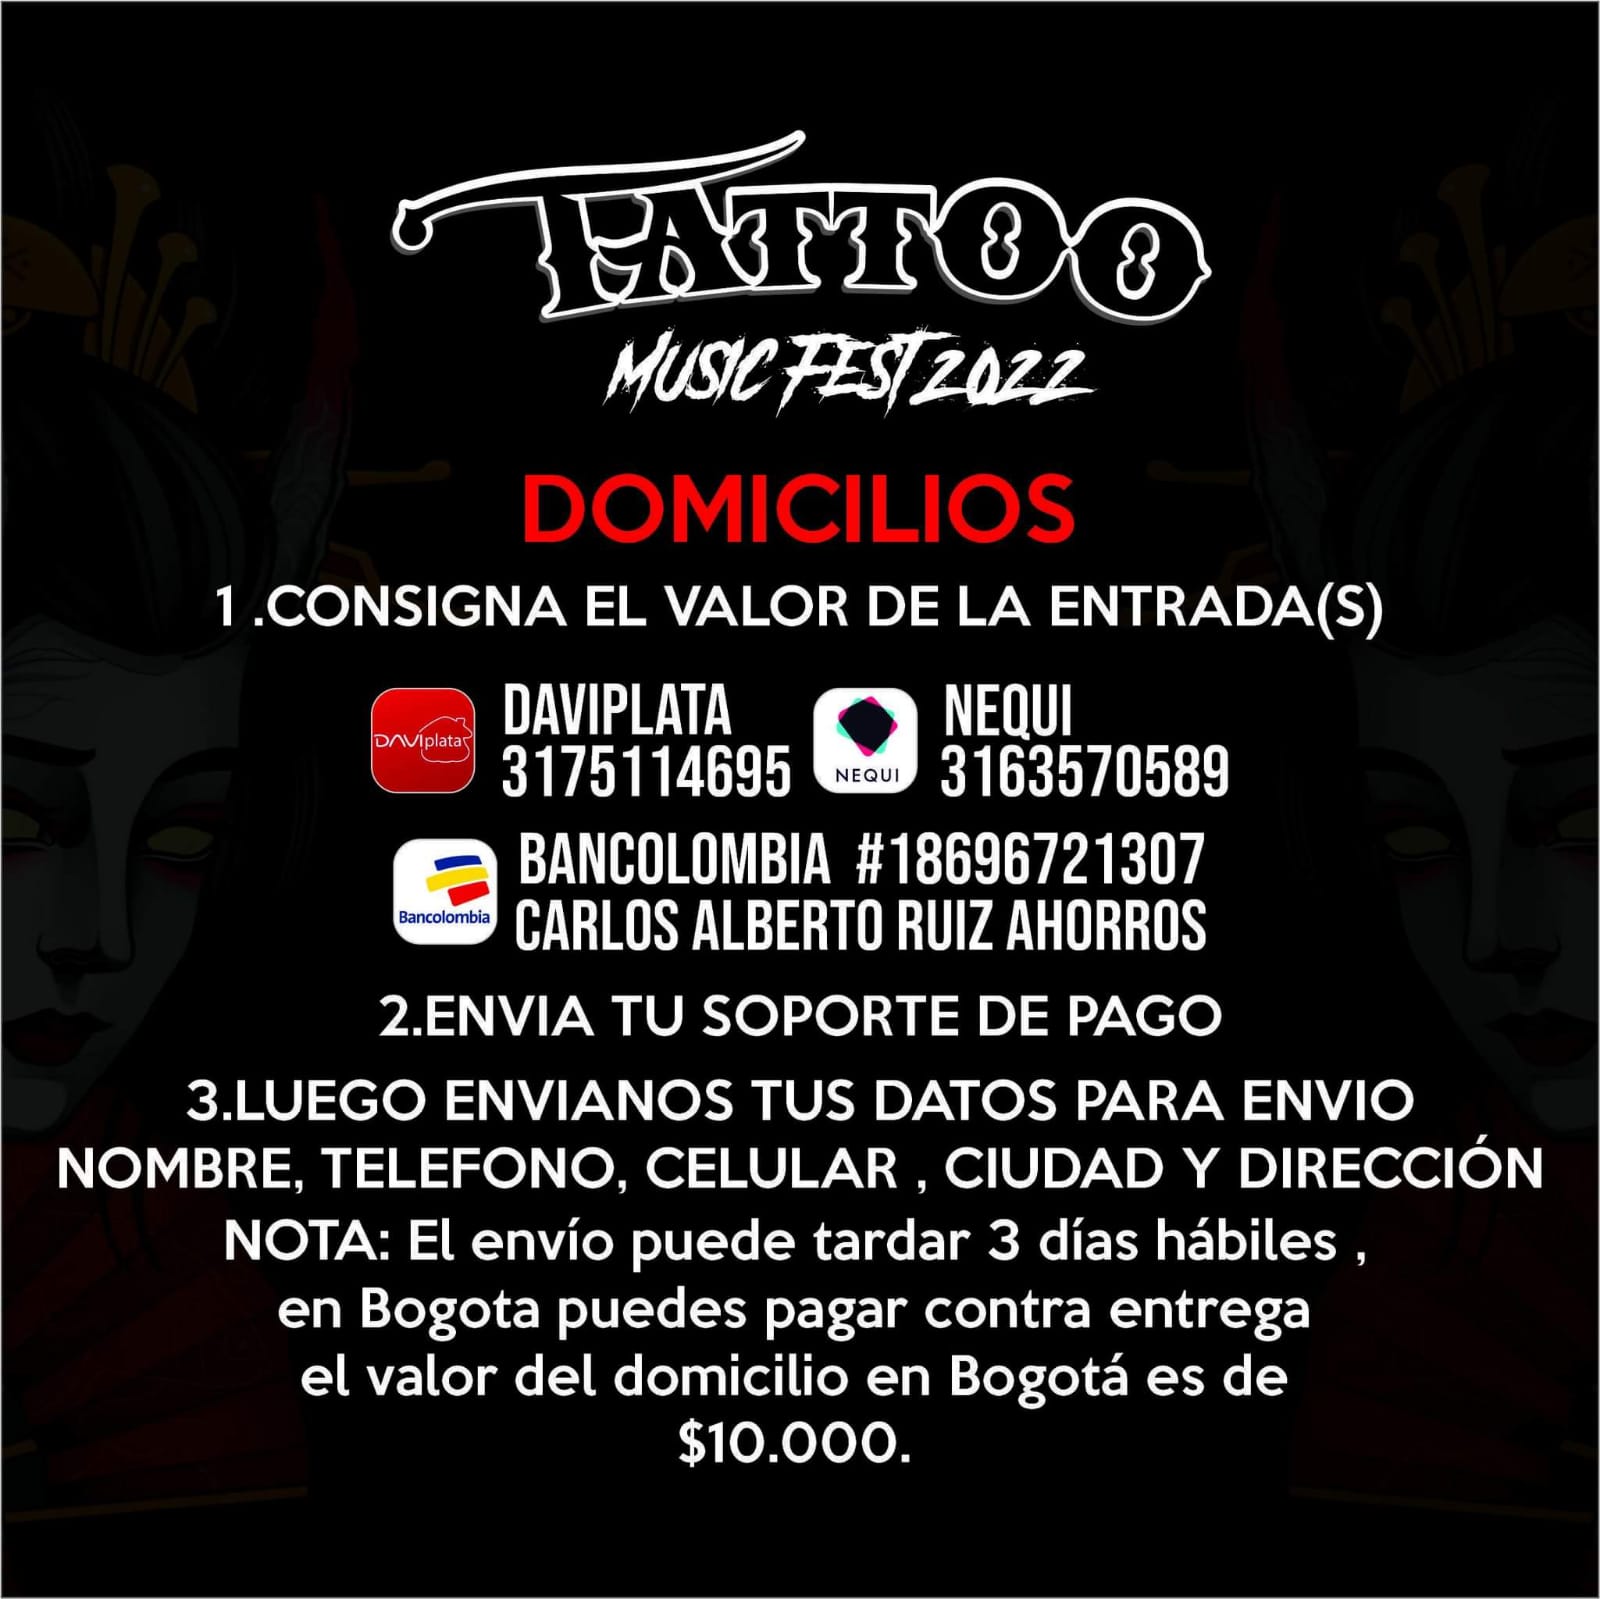 domicilios-tattoo-music-fest-2022